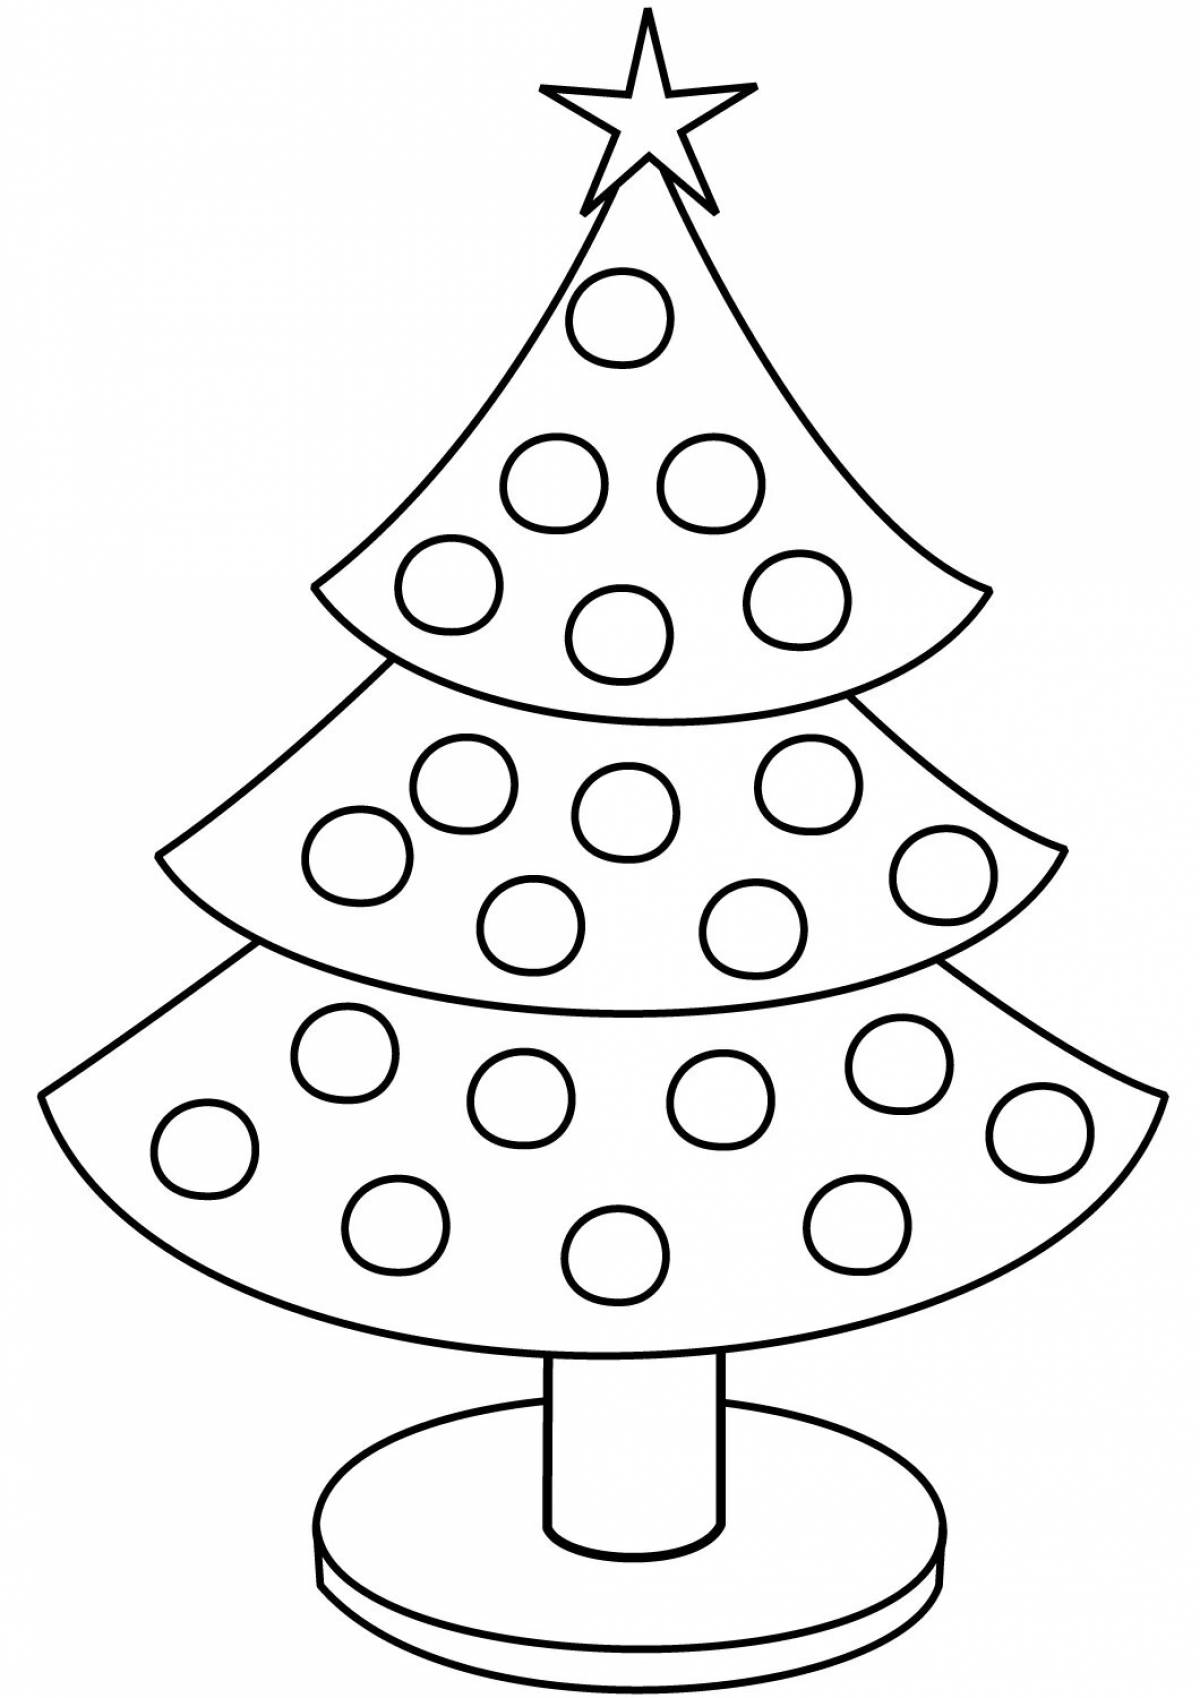 Завораживающая раскраска рождественской елки для детей 3-4 лет